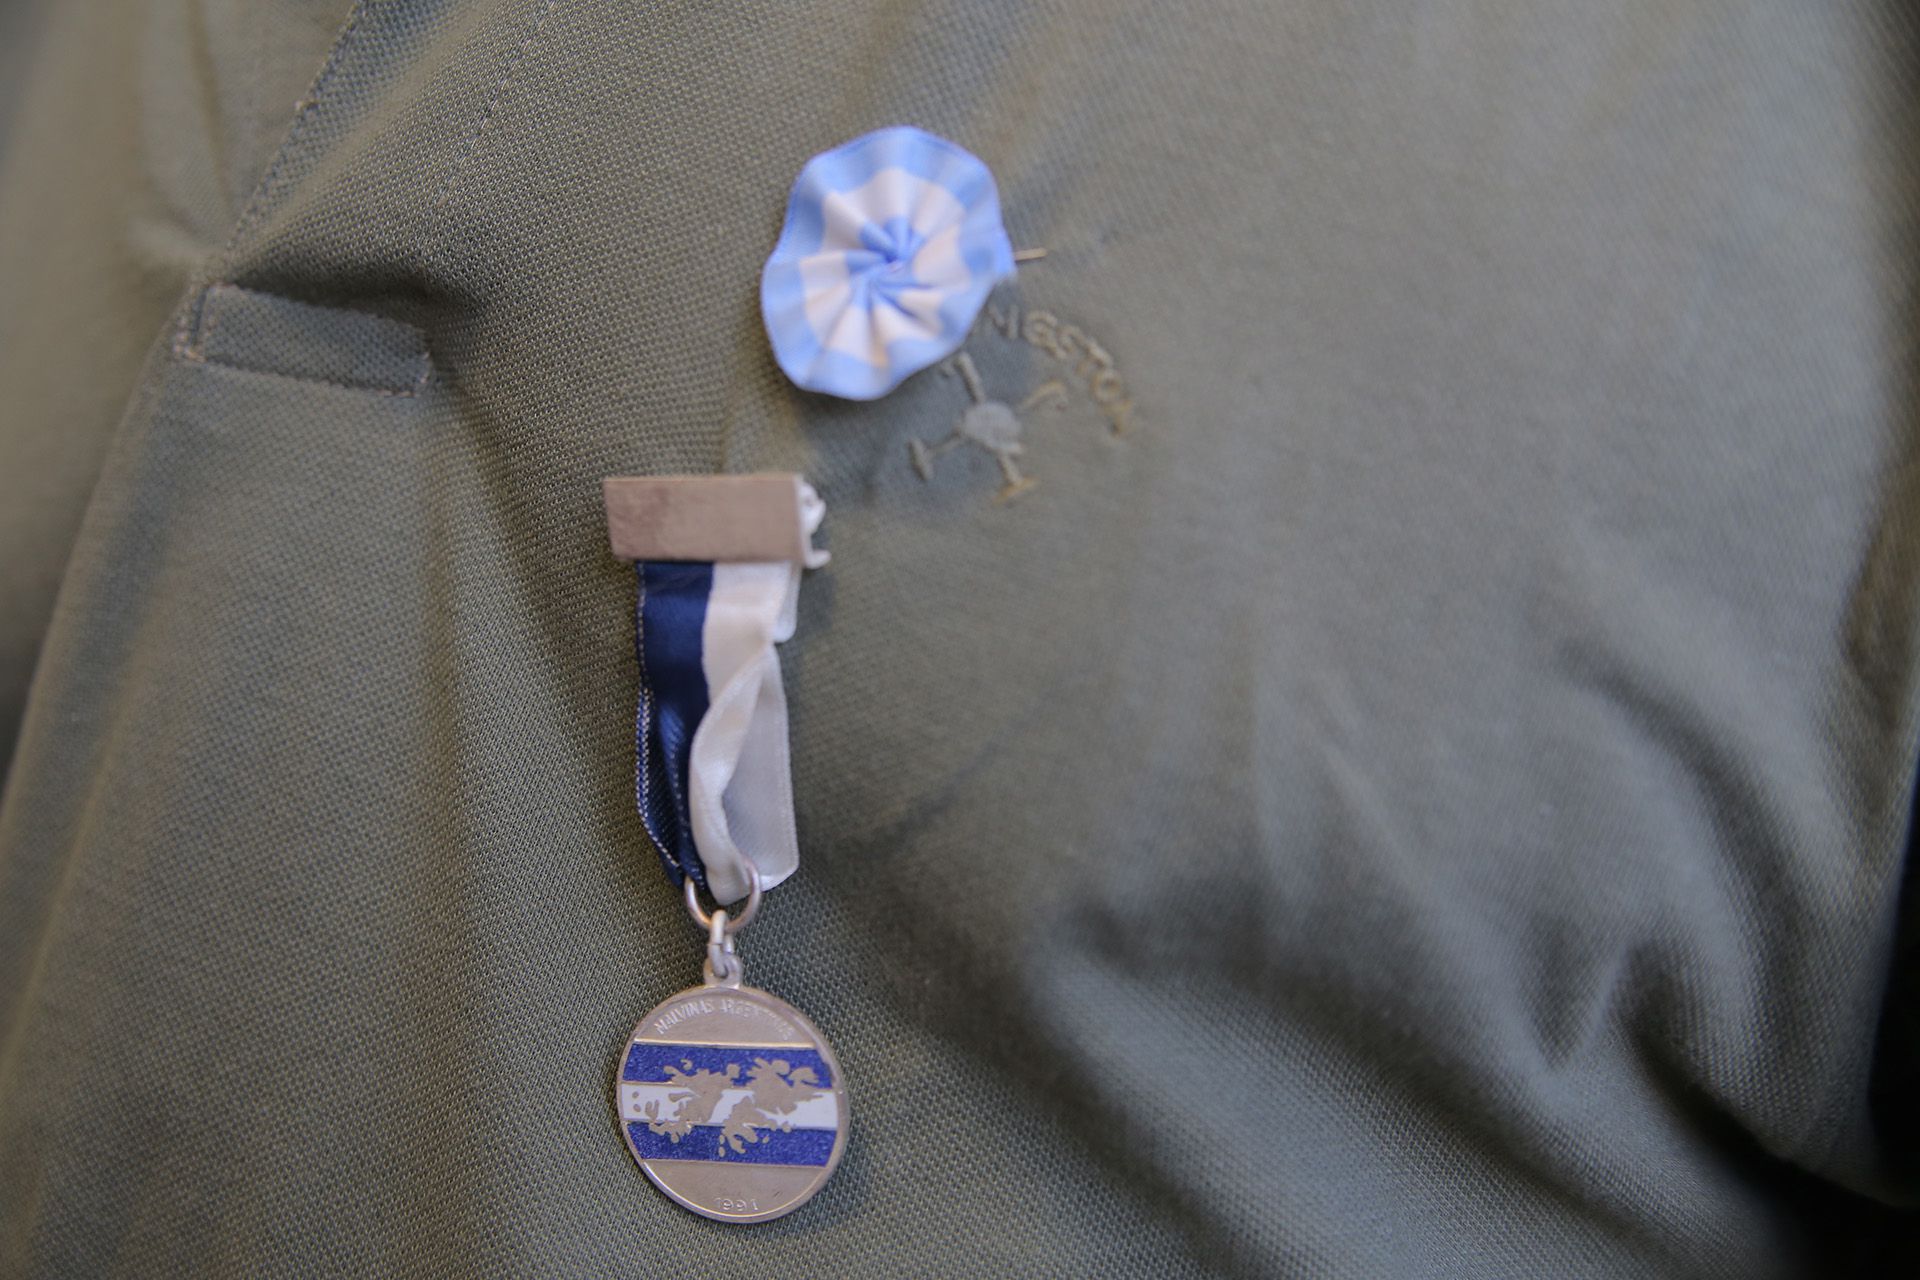 La medalla que recibió, a 37 años de la guerra (Nicolás Tannchen)